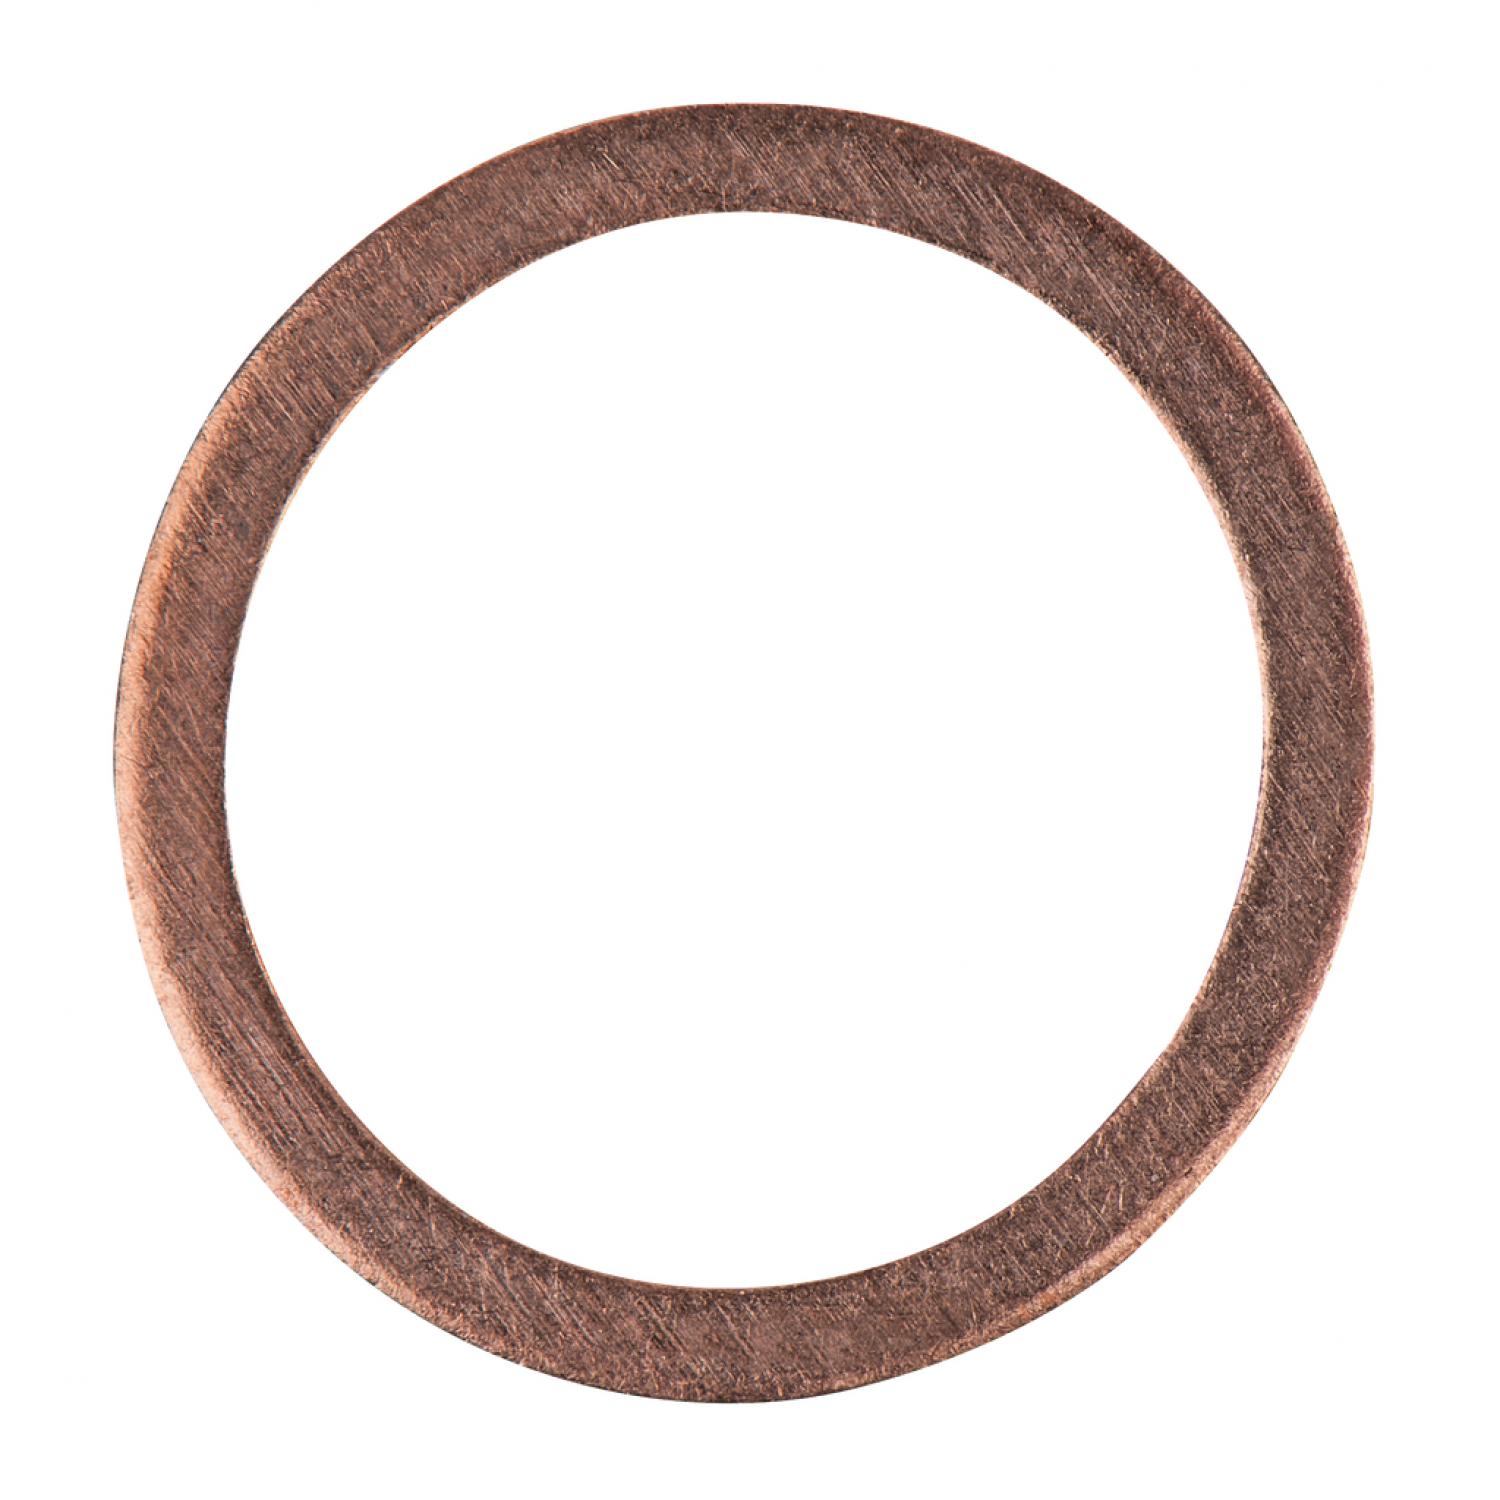 Уплотнительное кольцо, медное, внешний Ø 18 мм, внутренний Ø 14 мм, 1 шт в упаковке